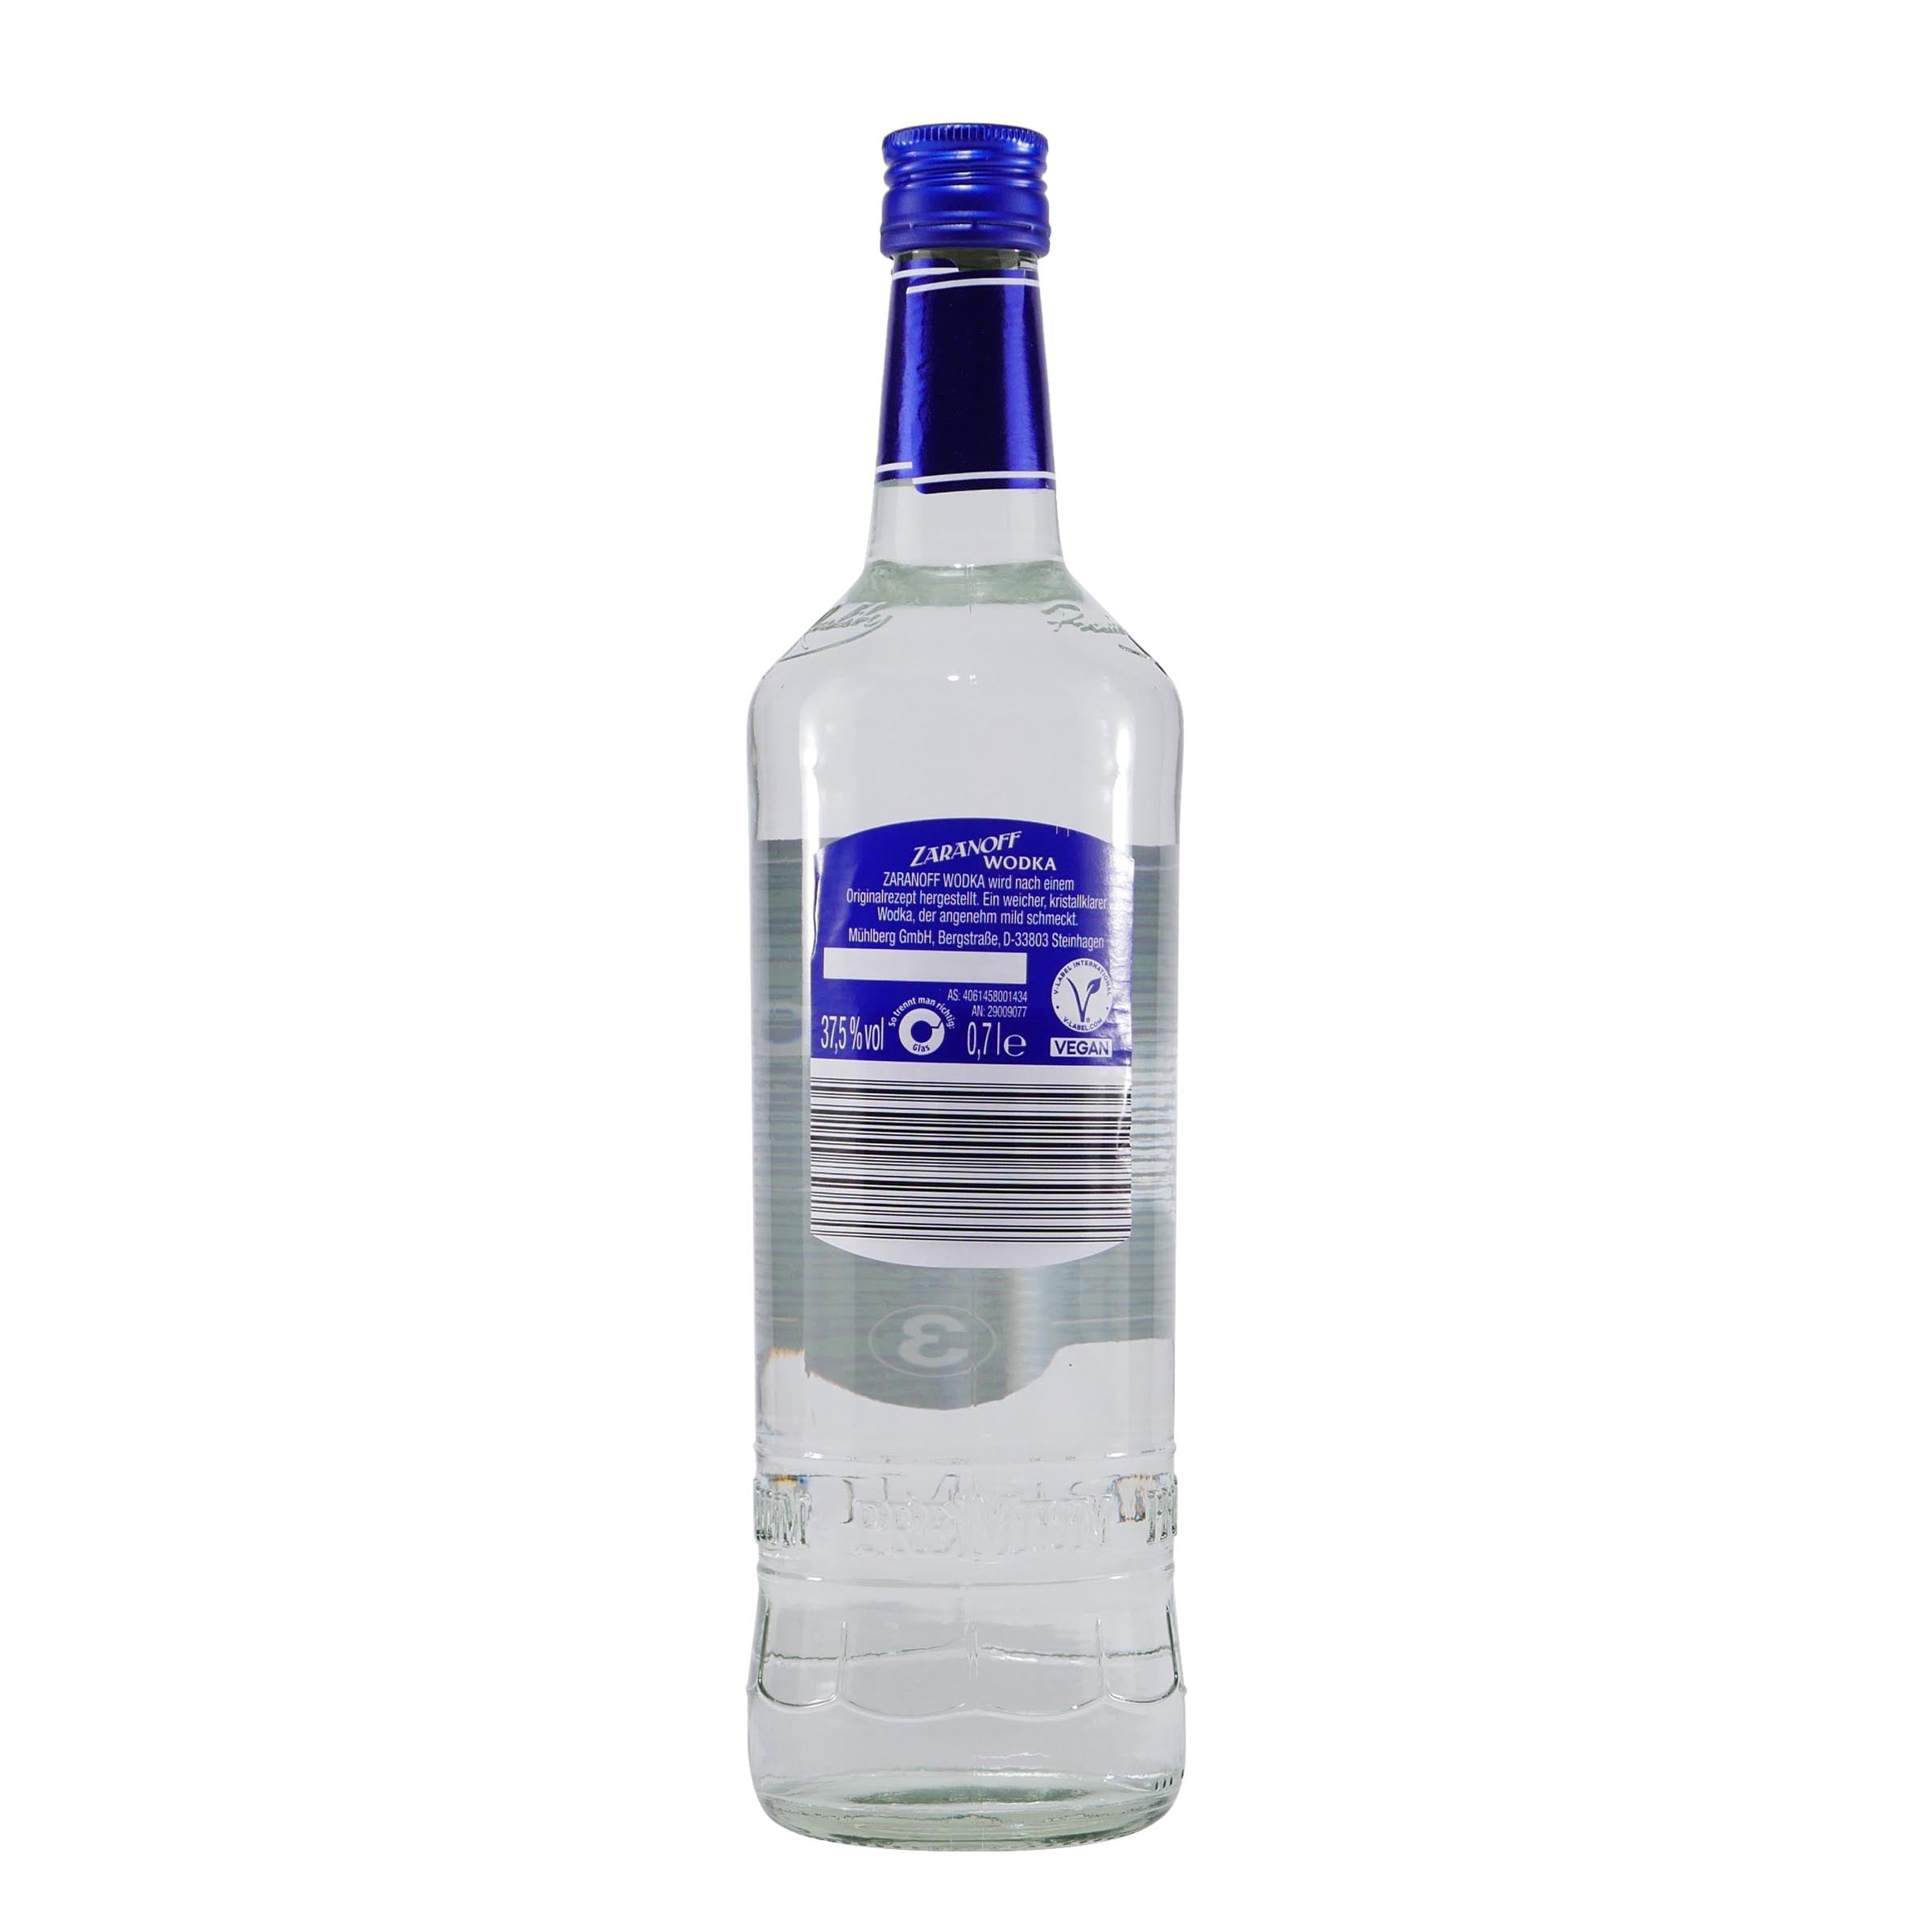 Zaranoff Wodka (6 x 0,7L)